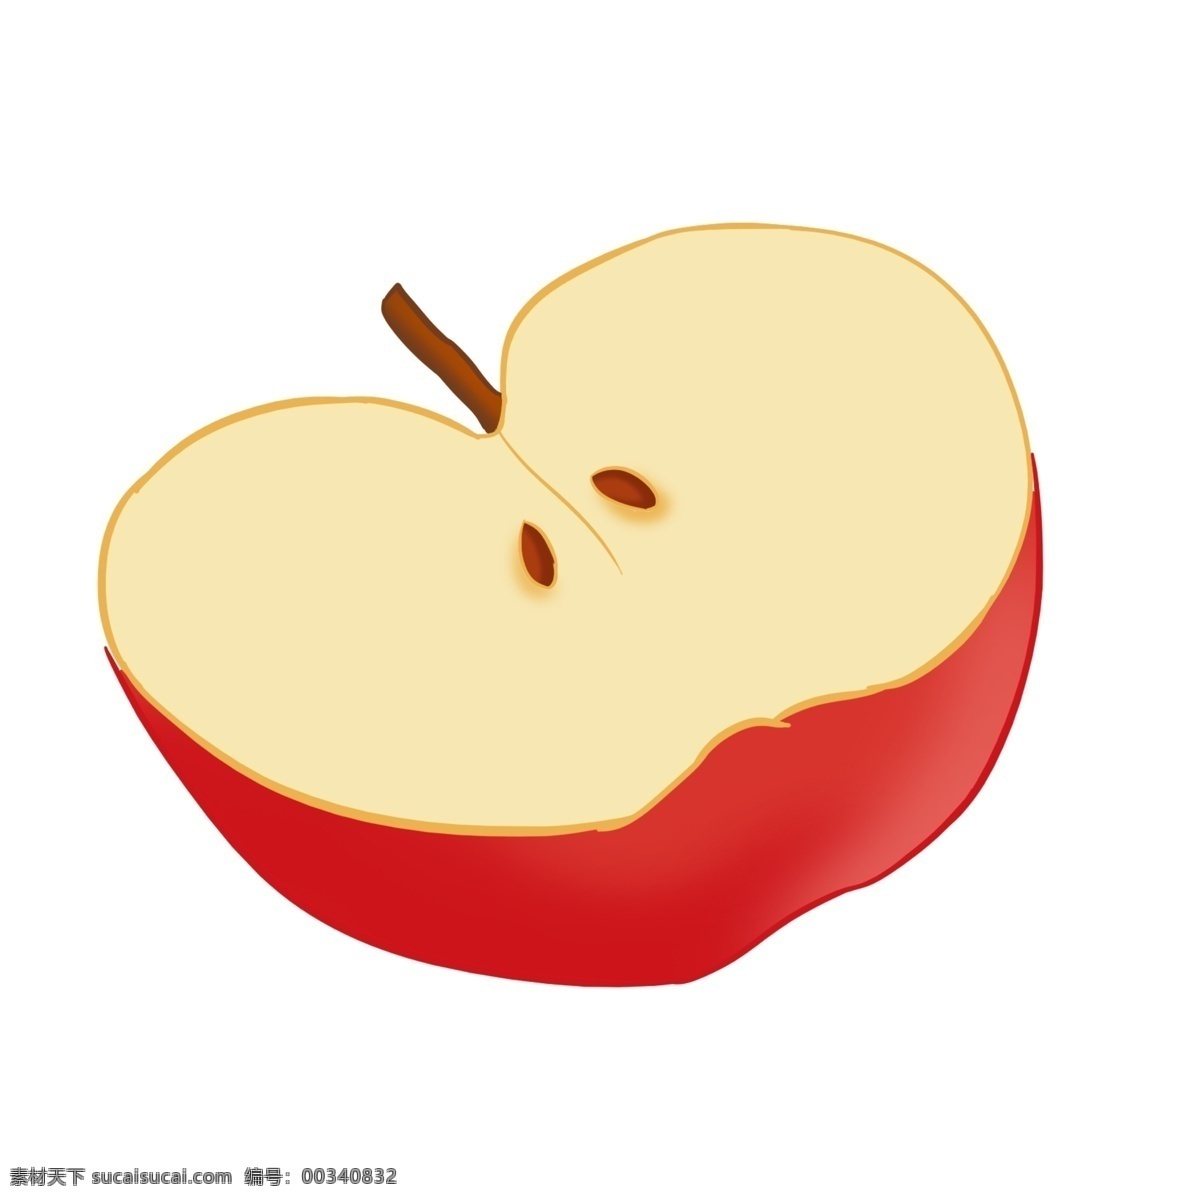 一半 苹果 手绘 水果 红色 装饰 贴画 中国红 亮色 中国风画法 平安吉祥 水果之王